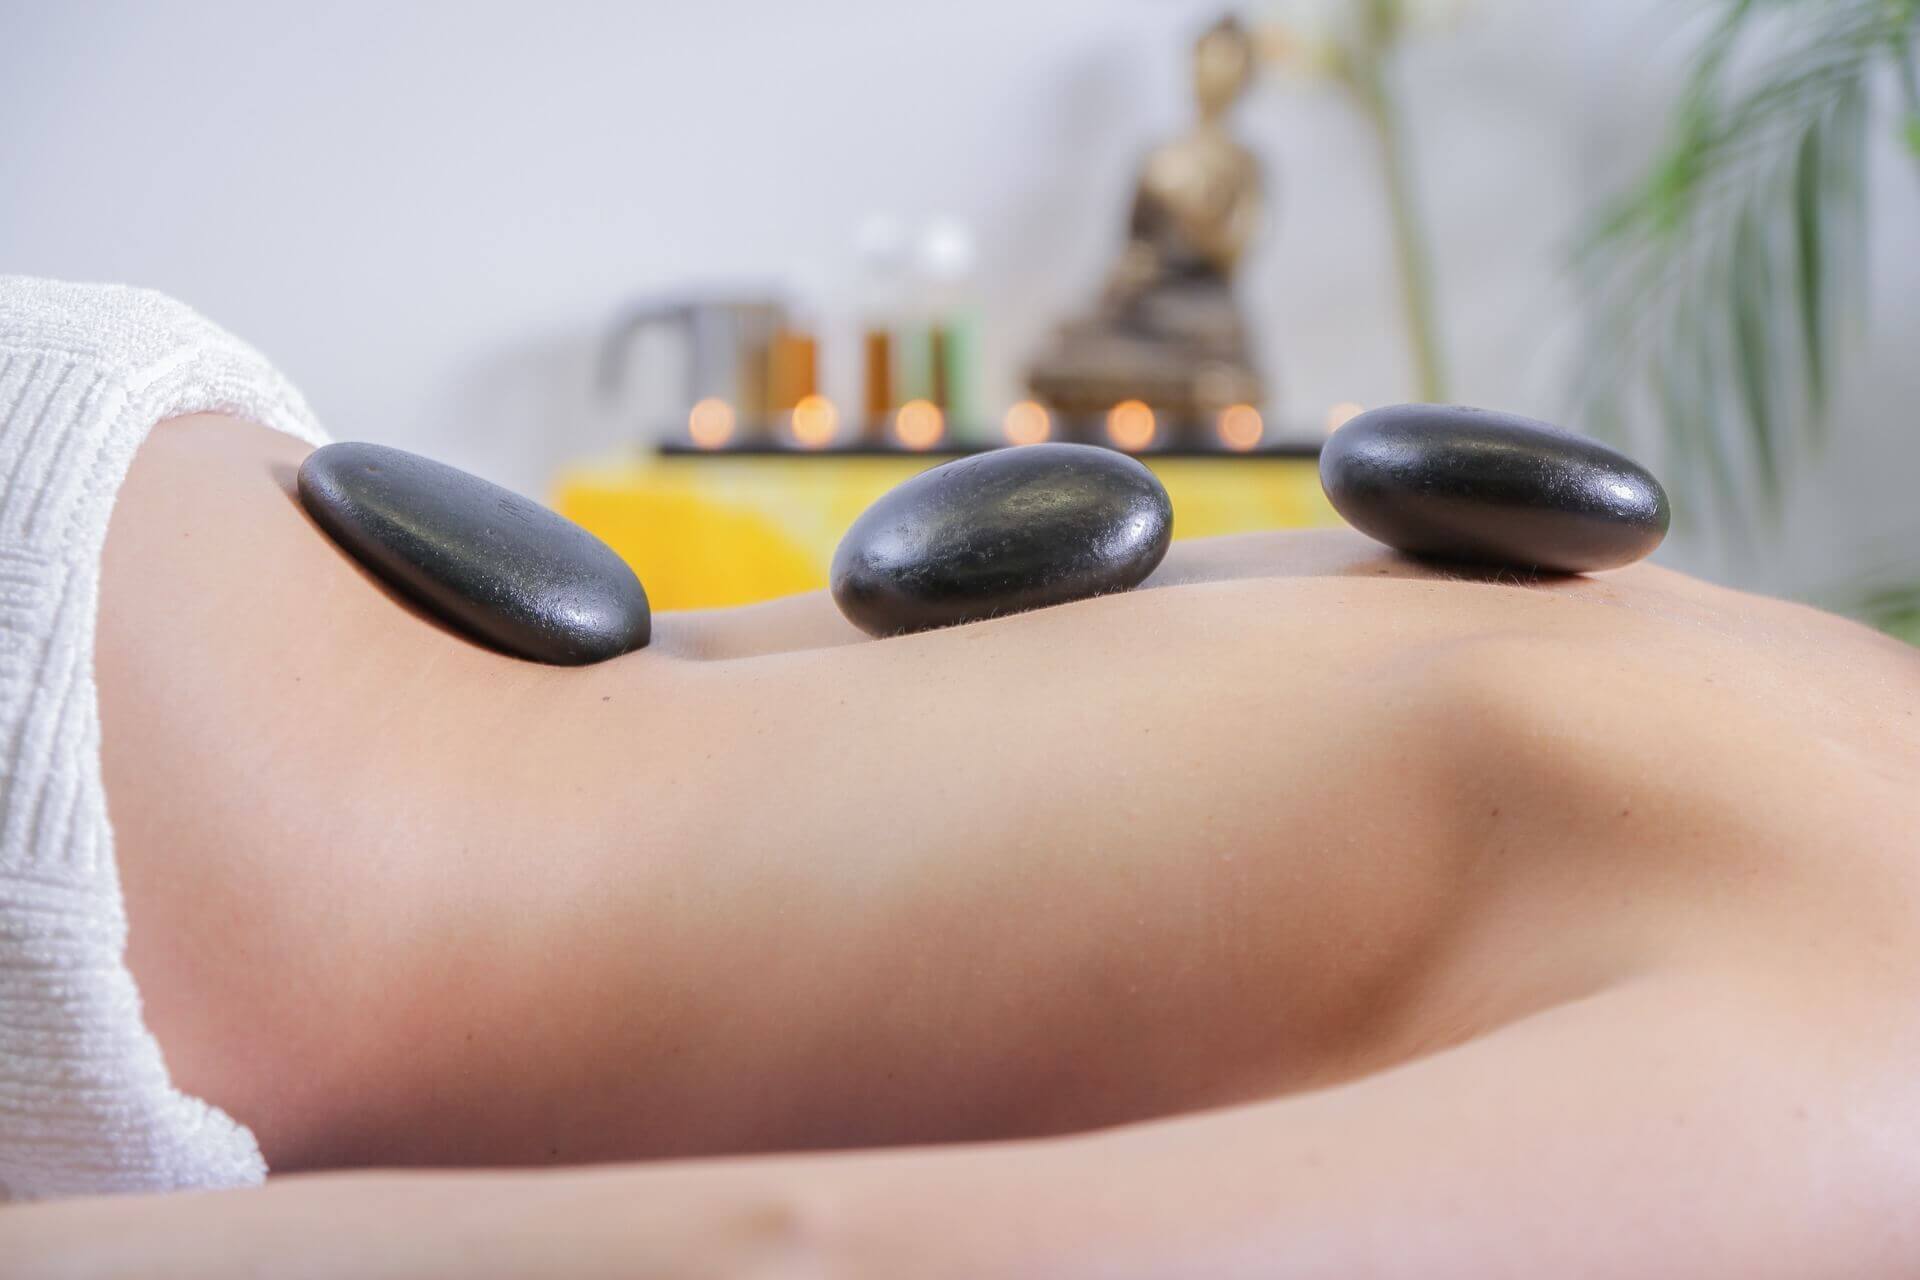 7 ползи от масажа, за които не подозирате